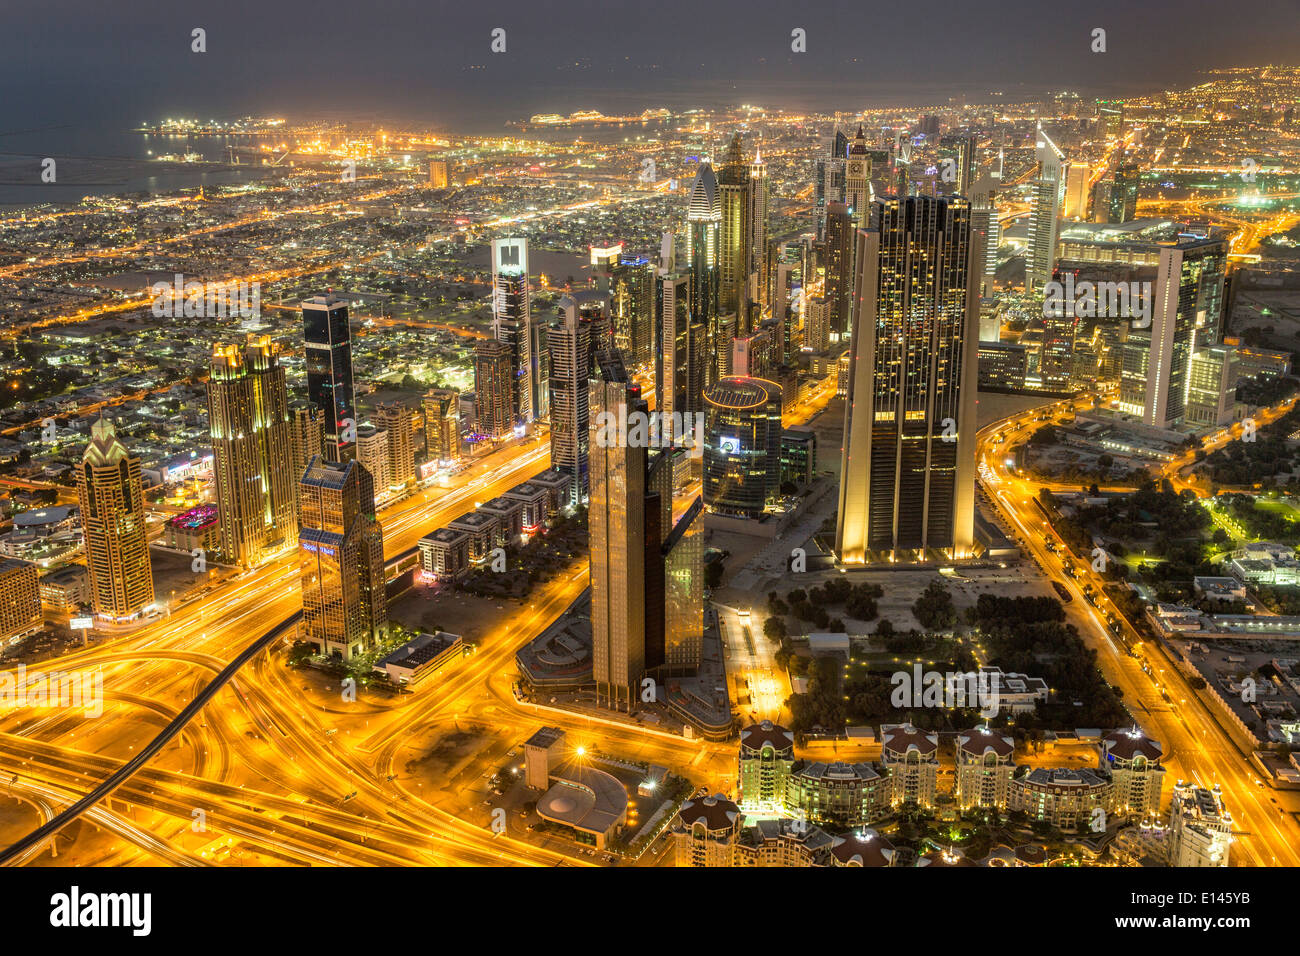 Vereinigte Arabische Emirate, Dubai, finanzielle Stadtzentrum, Sheikh Zayed Road. Blick vom Burj Khalifa, dem höchsten Gebäude. Twilight Stockfoto